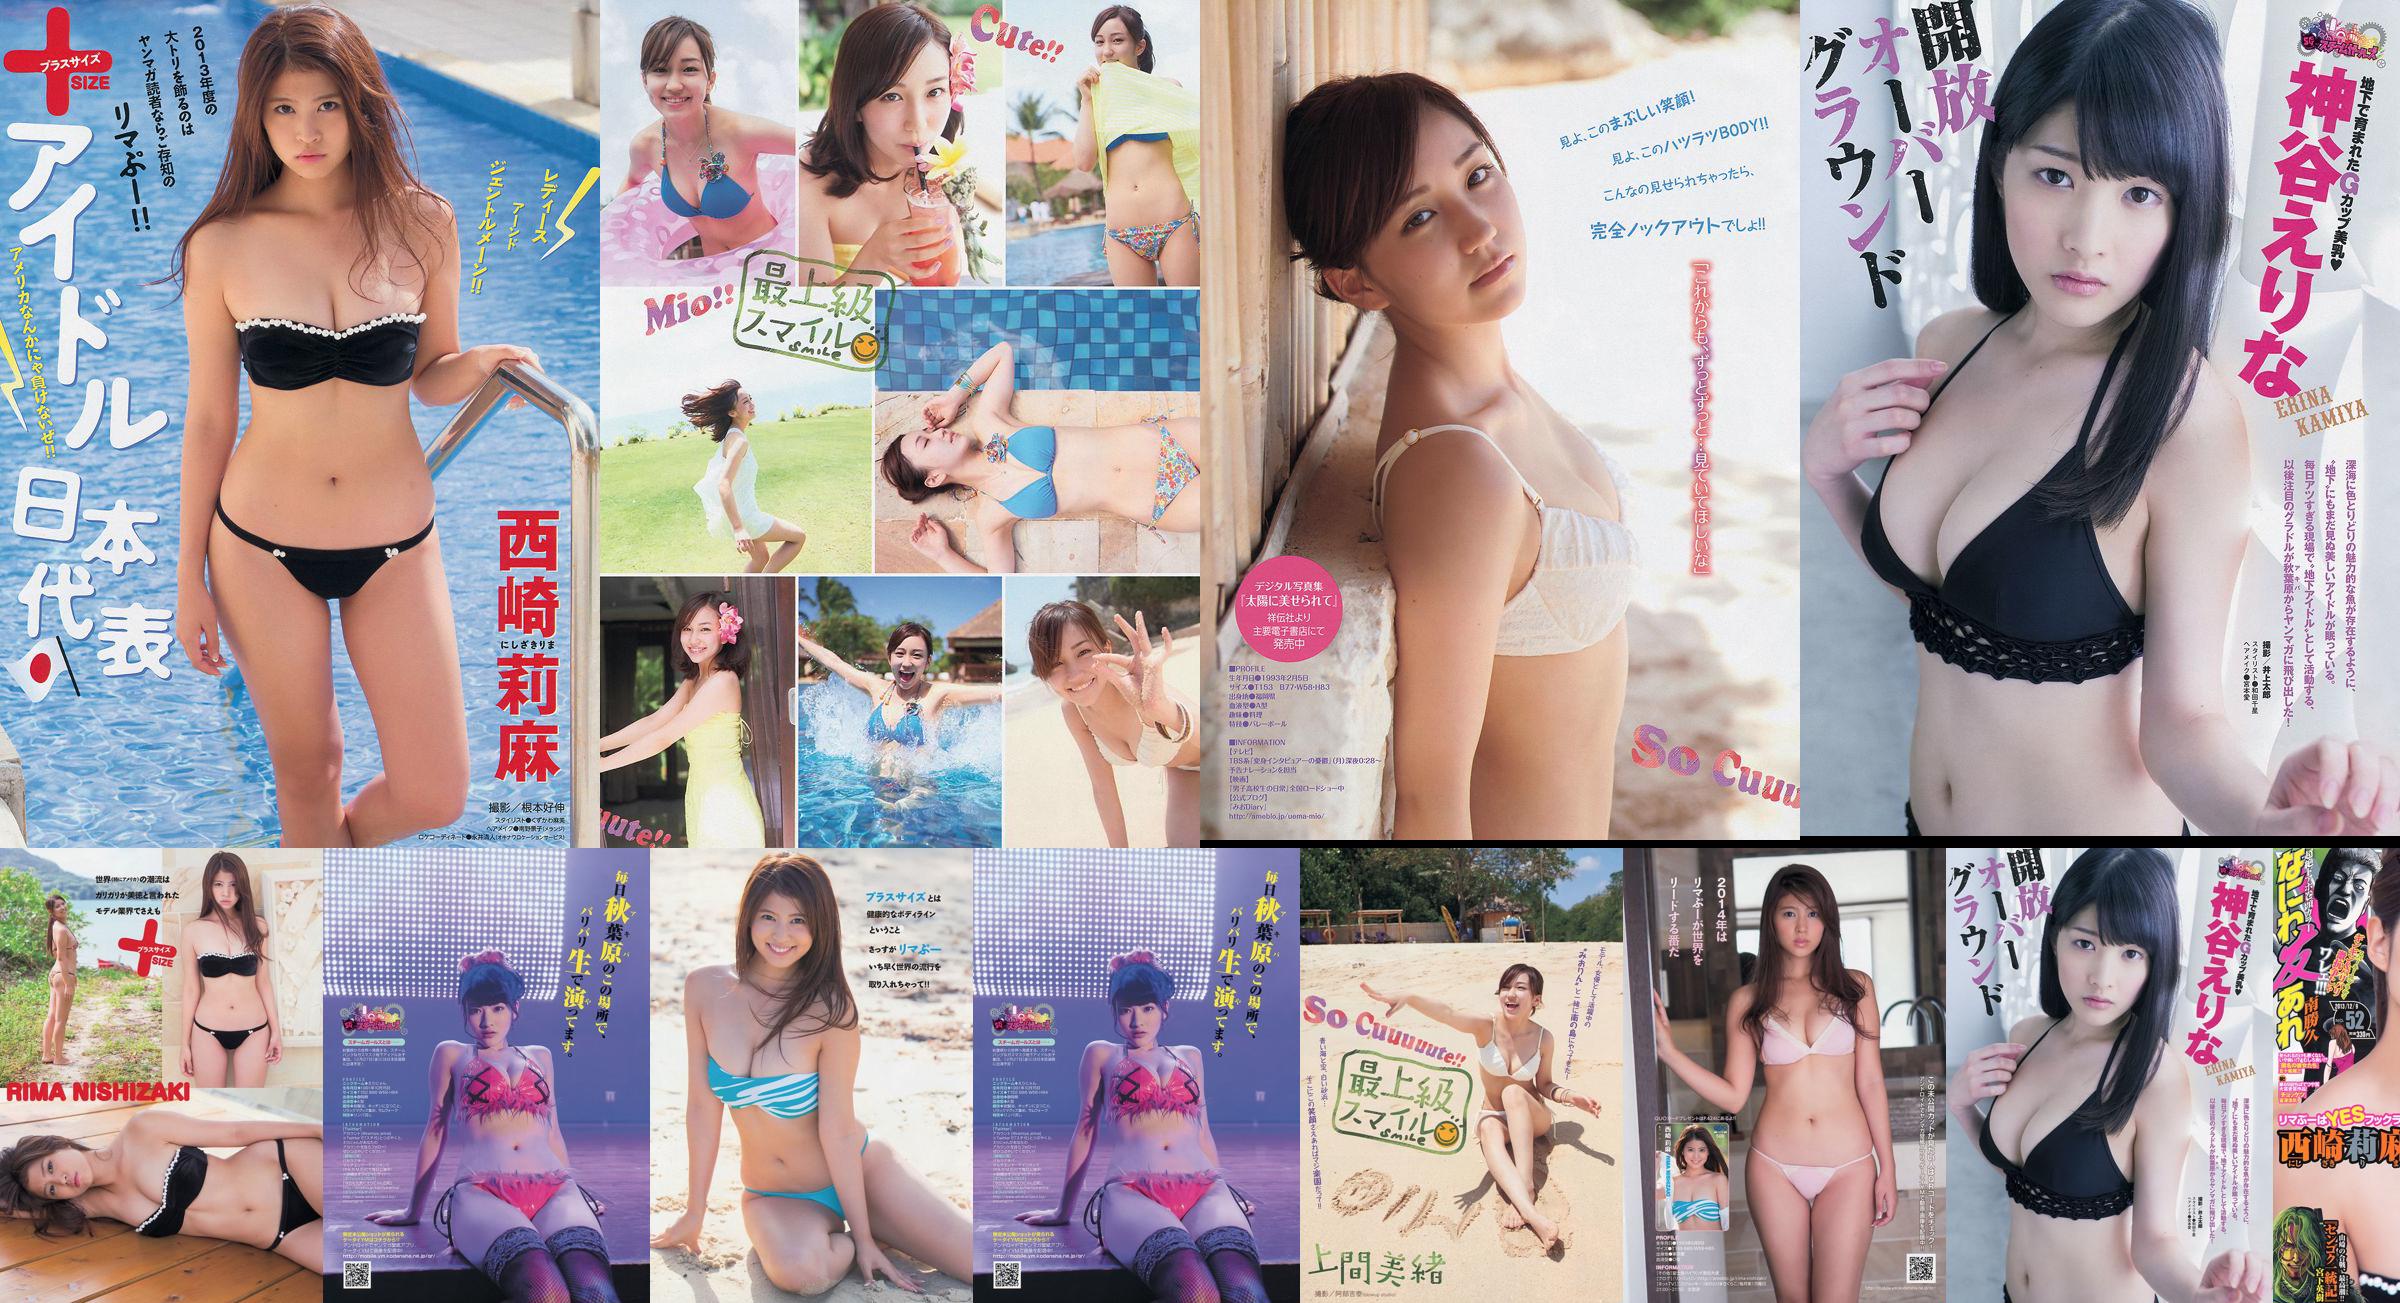 [Young Magazine] Rima Nishizaki Mio Uema Erina Kamiya 2013 No.52 Photo Moshi No.07ef40 第1頁